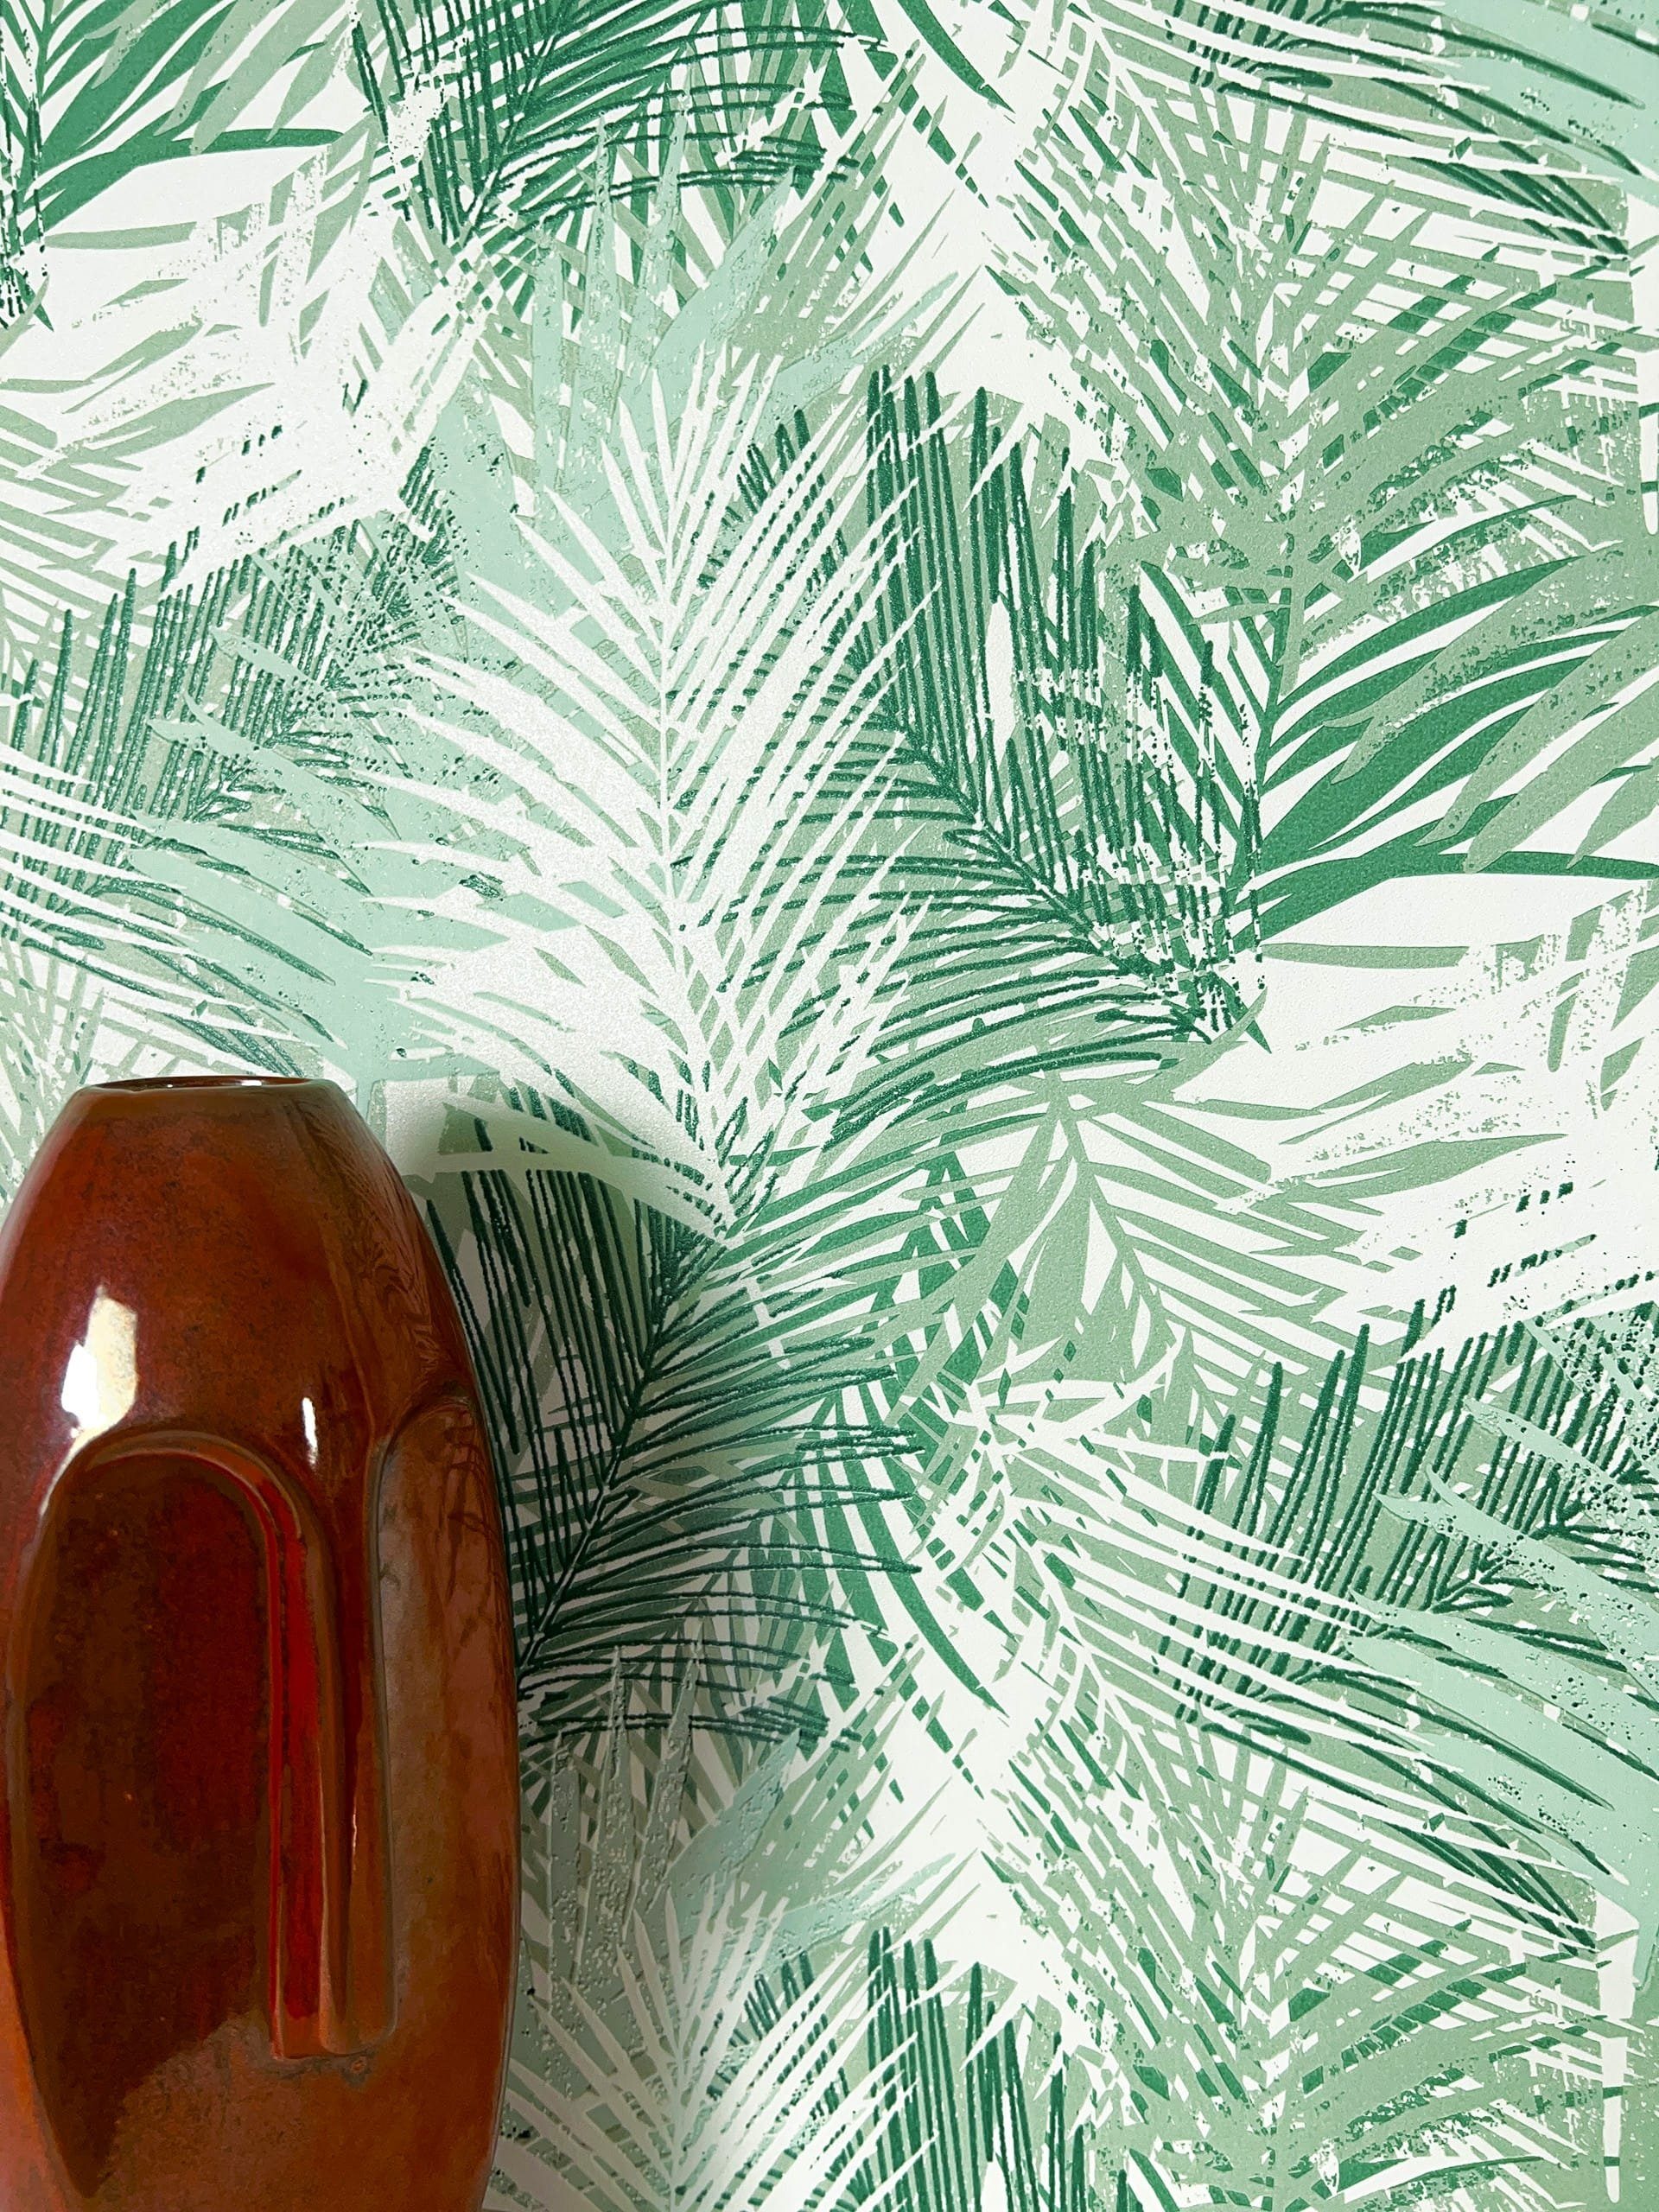 Newroom Vliestapete, Grün Tapete Modern Dschungel - Mustertapete Blumentapete Dunkelgrün Weiß Tropisch Floral Palmen Blätter für Wohnzimmer Schlafzimmer Küche